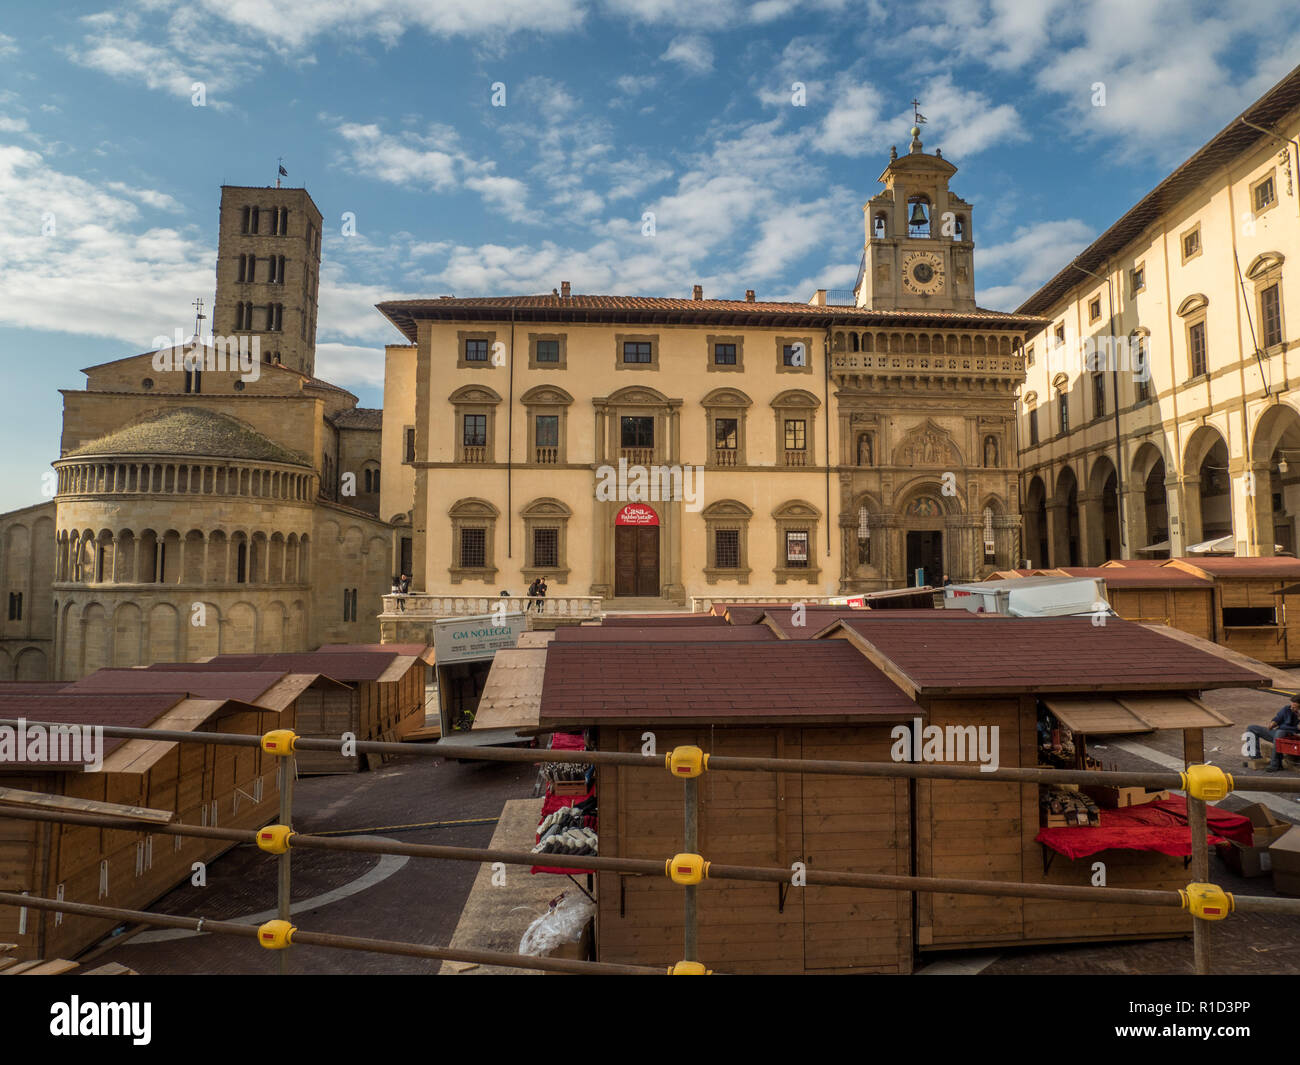 La Grande Place médiévale, la place principale de la ville de Arezzo, Toscane, Italie, avec Santa Maria della Pieve à gauche et le palais gothique de la Fraternité laïcs droit Banque D'Images